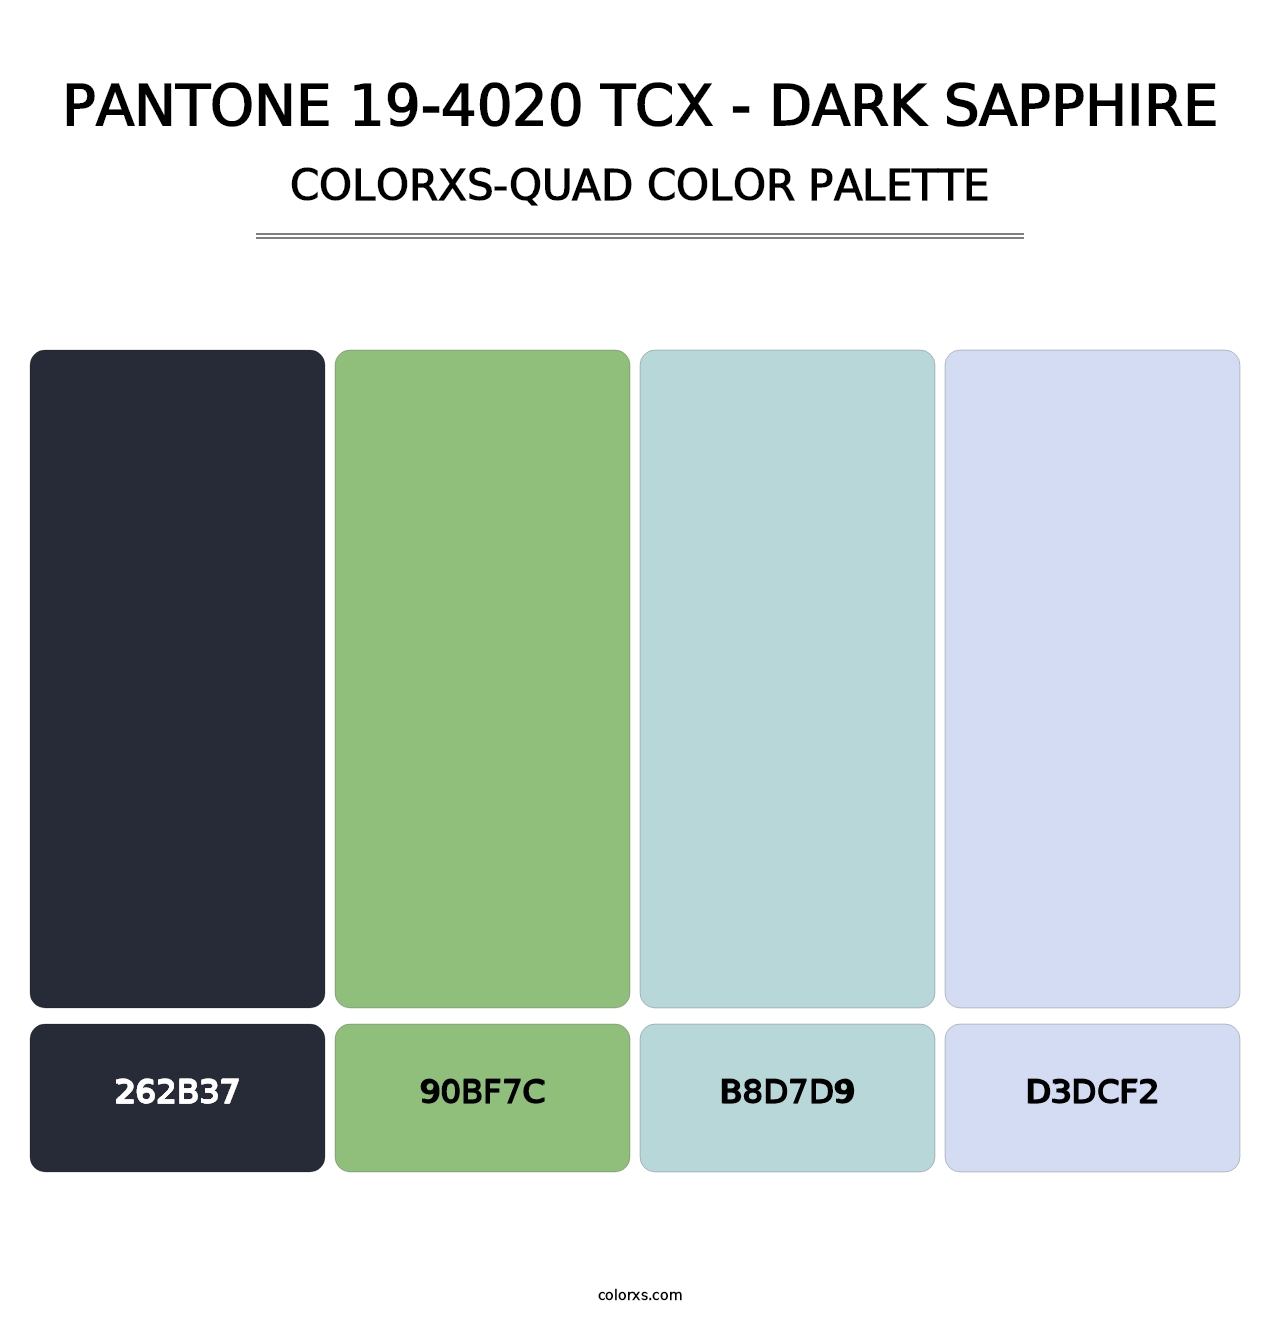 PANTONE 19-4020 TCX - Dark Sapphire - Colorxs Quad Palette